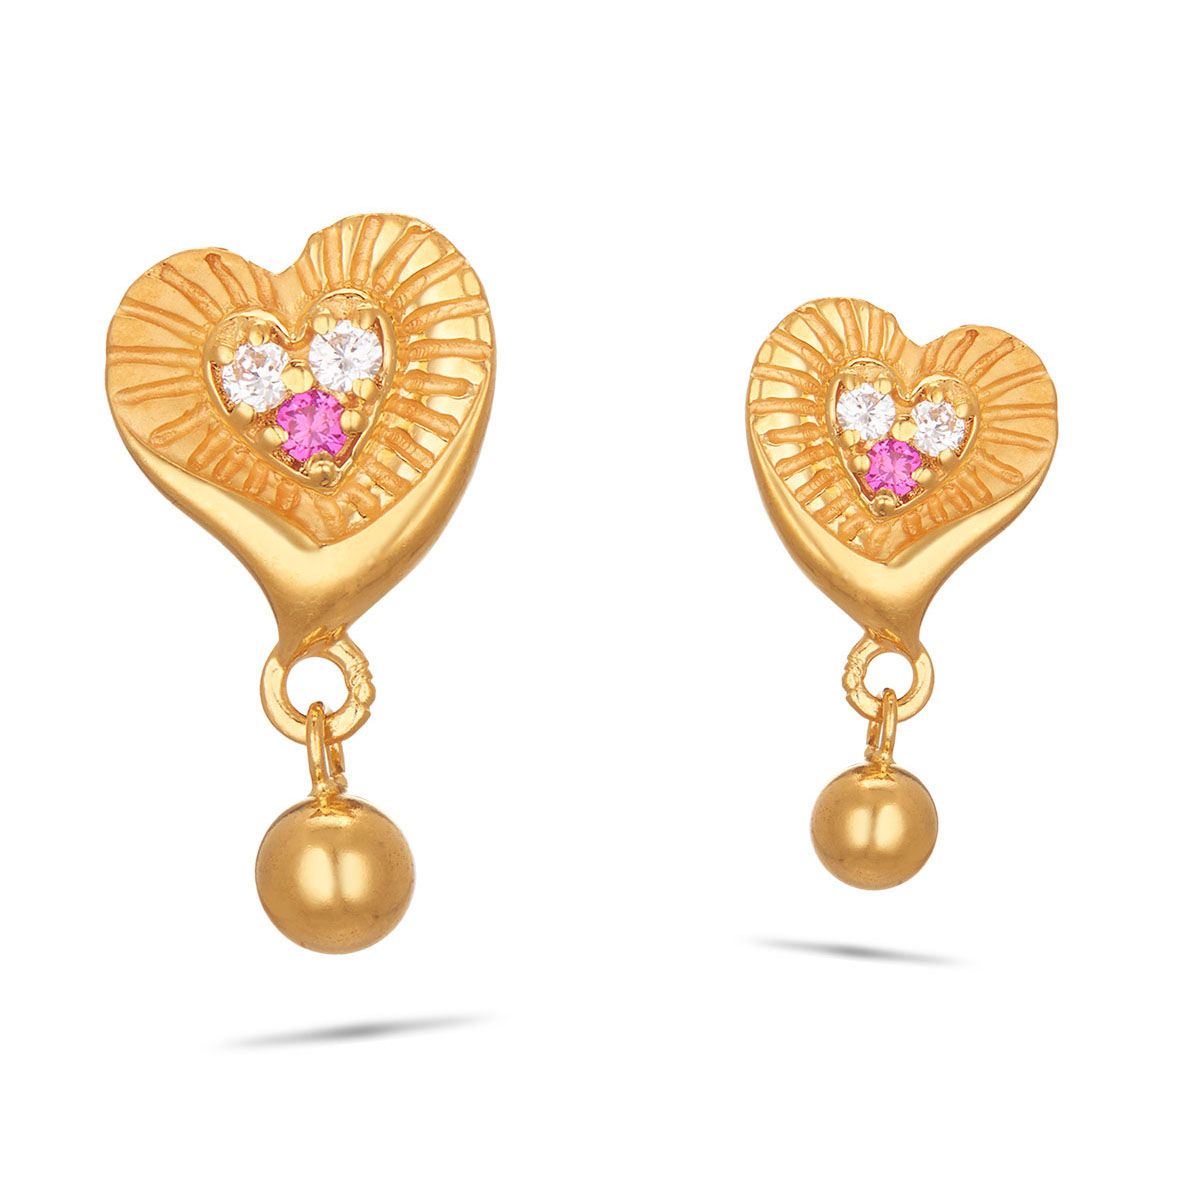 Top more than 225 22kt gold fancy earrings